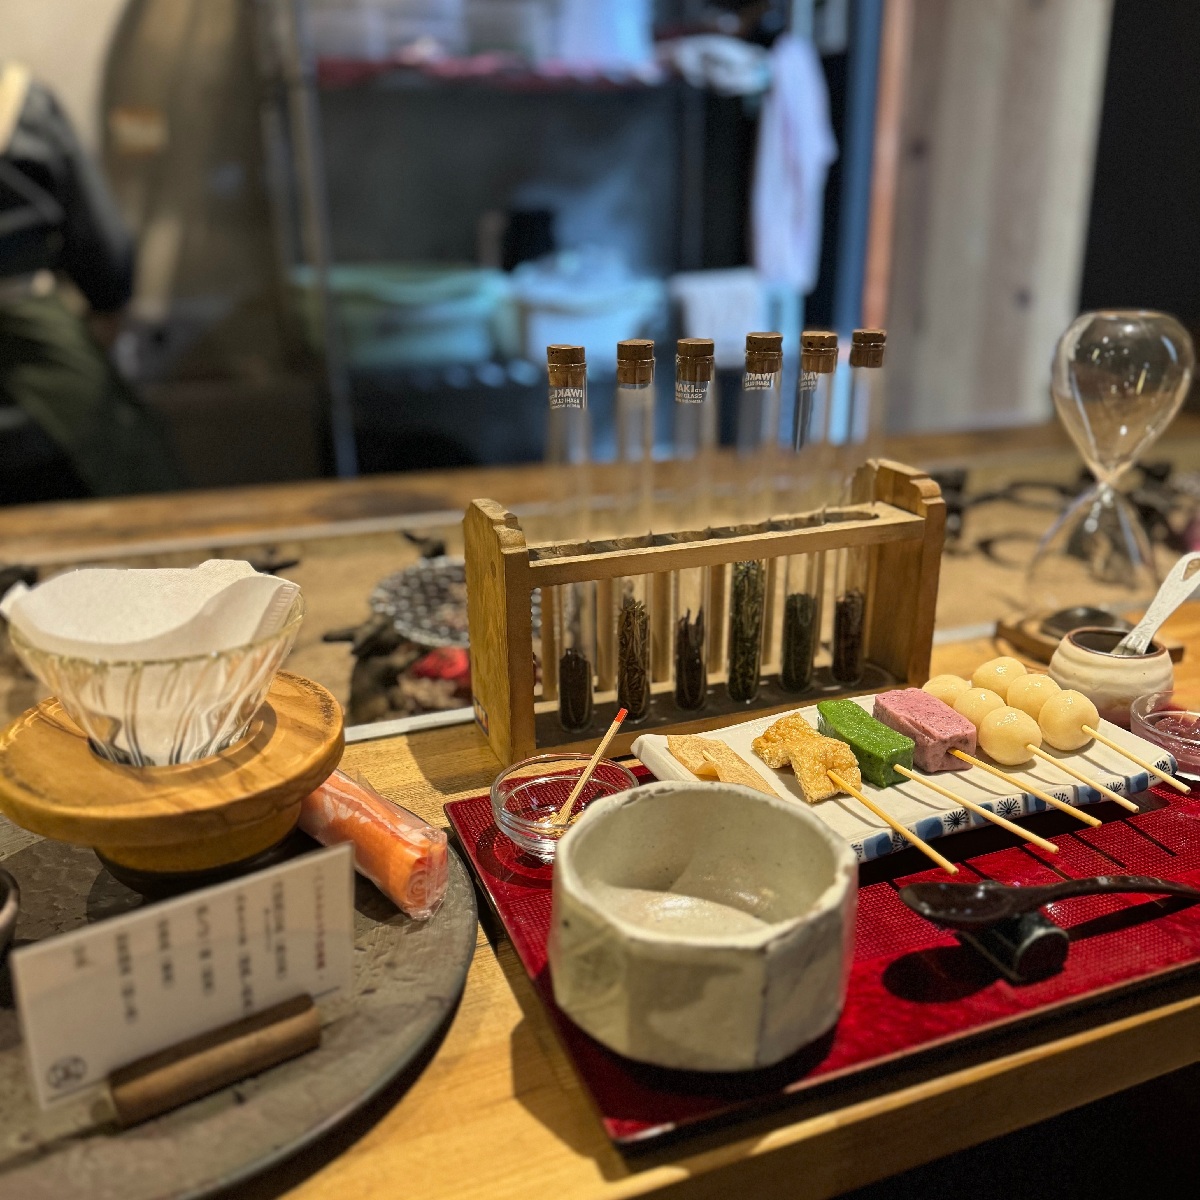 【京都】囲炉裏で焼く京団子とこだわり日本茶が楽しめる「ななころびやおき」